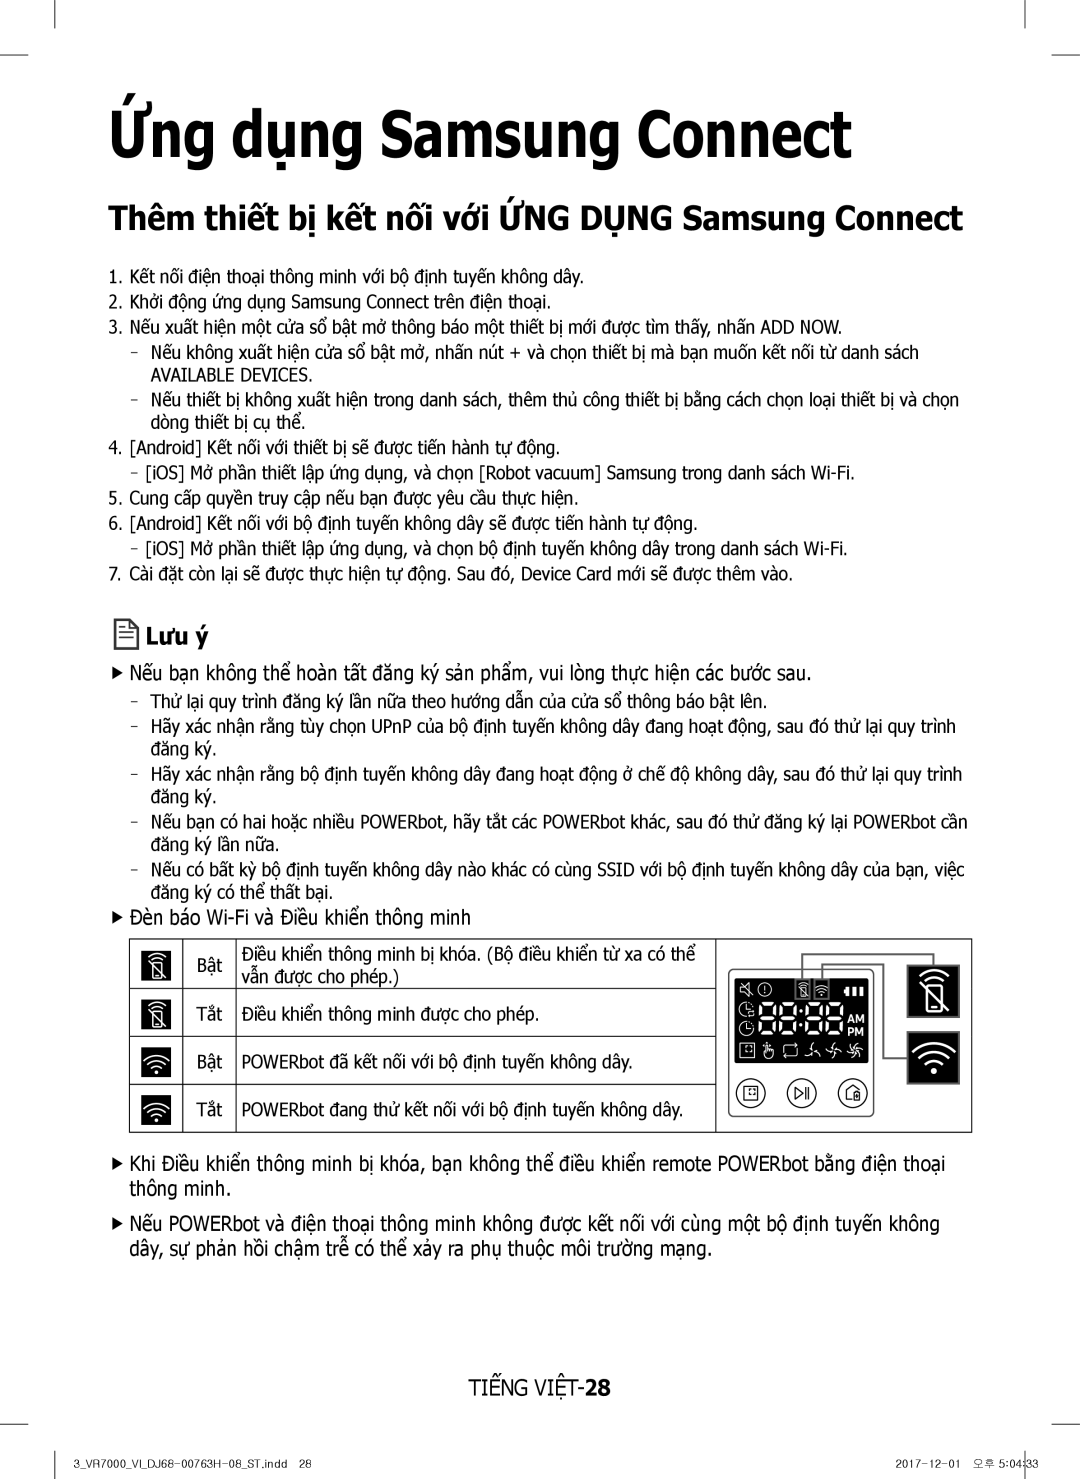 Samsung VR10M7030WG/ST manual Thêm thiết bị kết nối với ỨNG Dụng Samsung Connect, FfĐèn báo Wi-Fi và Điều khiển thông minh 